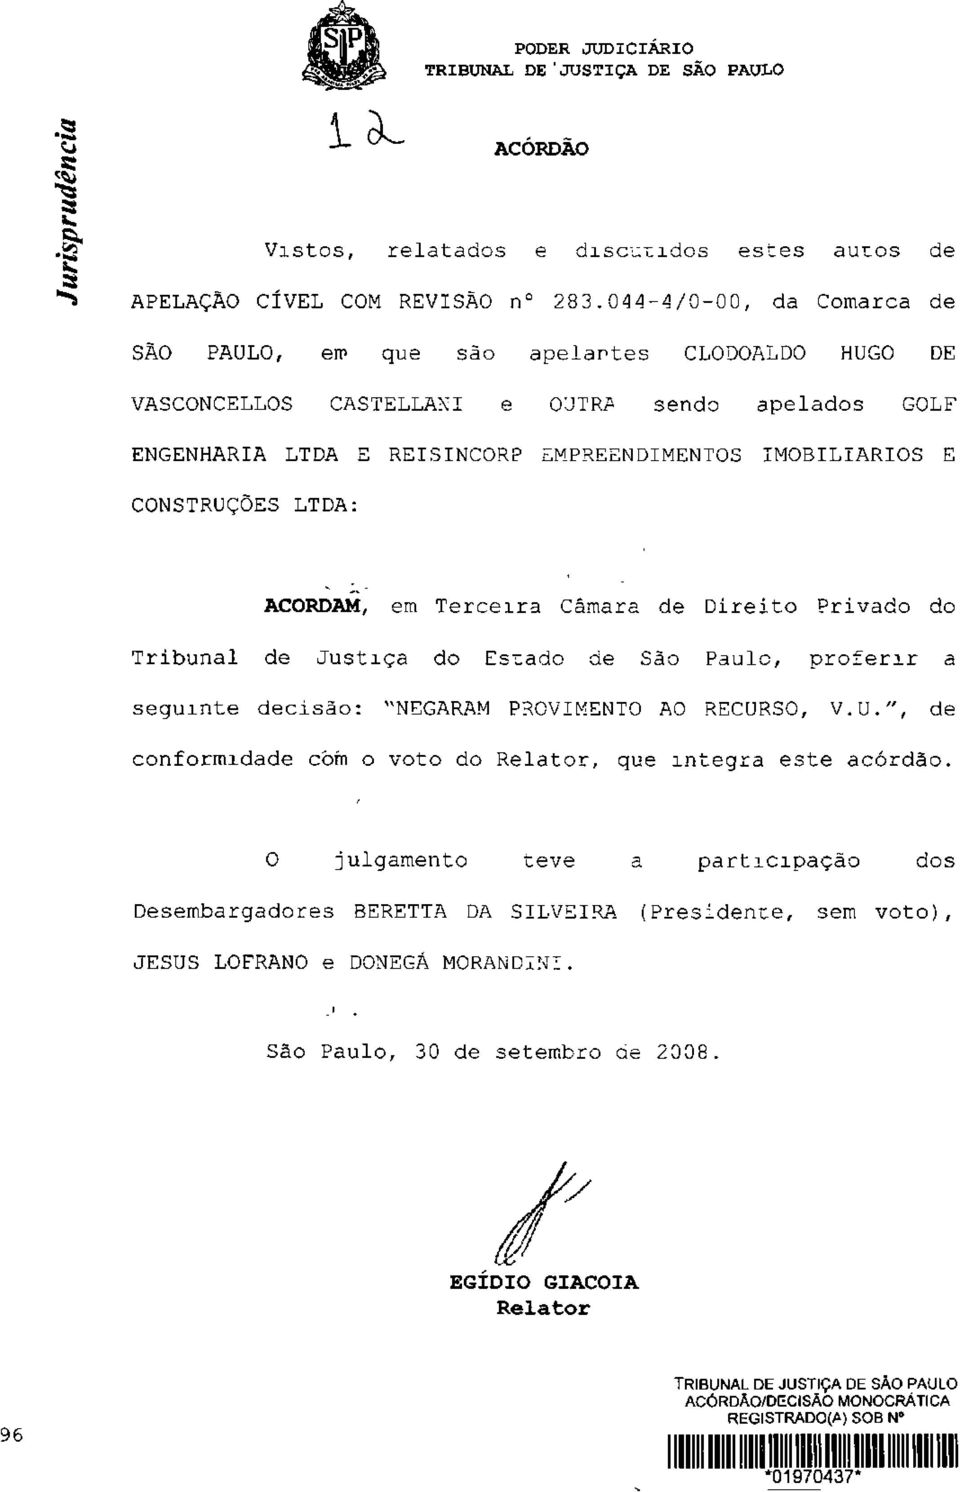 CONSTRUÇÕES LTDA: ACORDAM, em Terceira Câmara de Direito Privado do Tribunal de Justiça do Estado de São Paulo, proferir a seguinte decisão: "NEGARAM PROVIMENTO AO RECURSO, V.U.", de conformidade com o voto do Relator, que integra este acórdão.